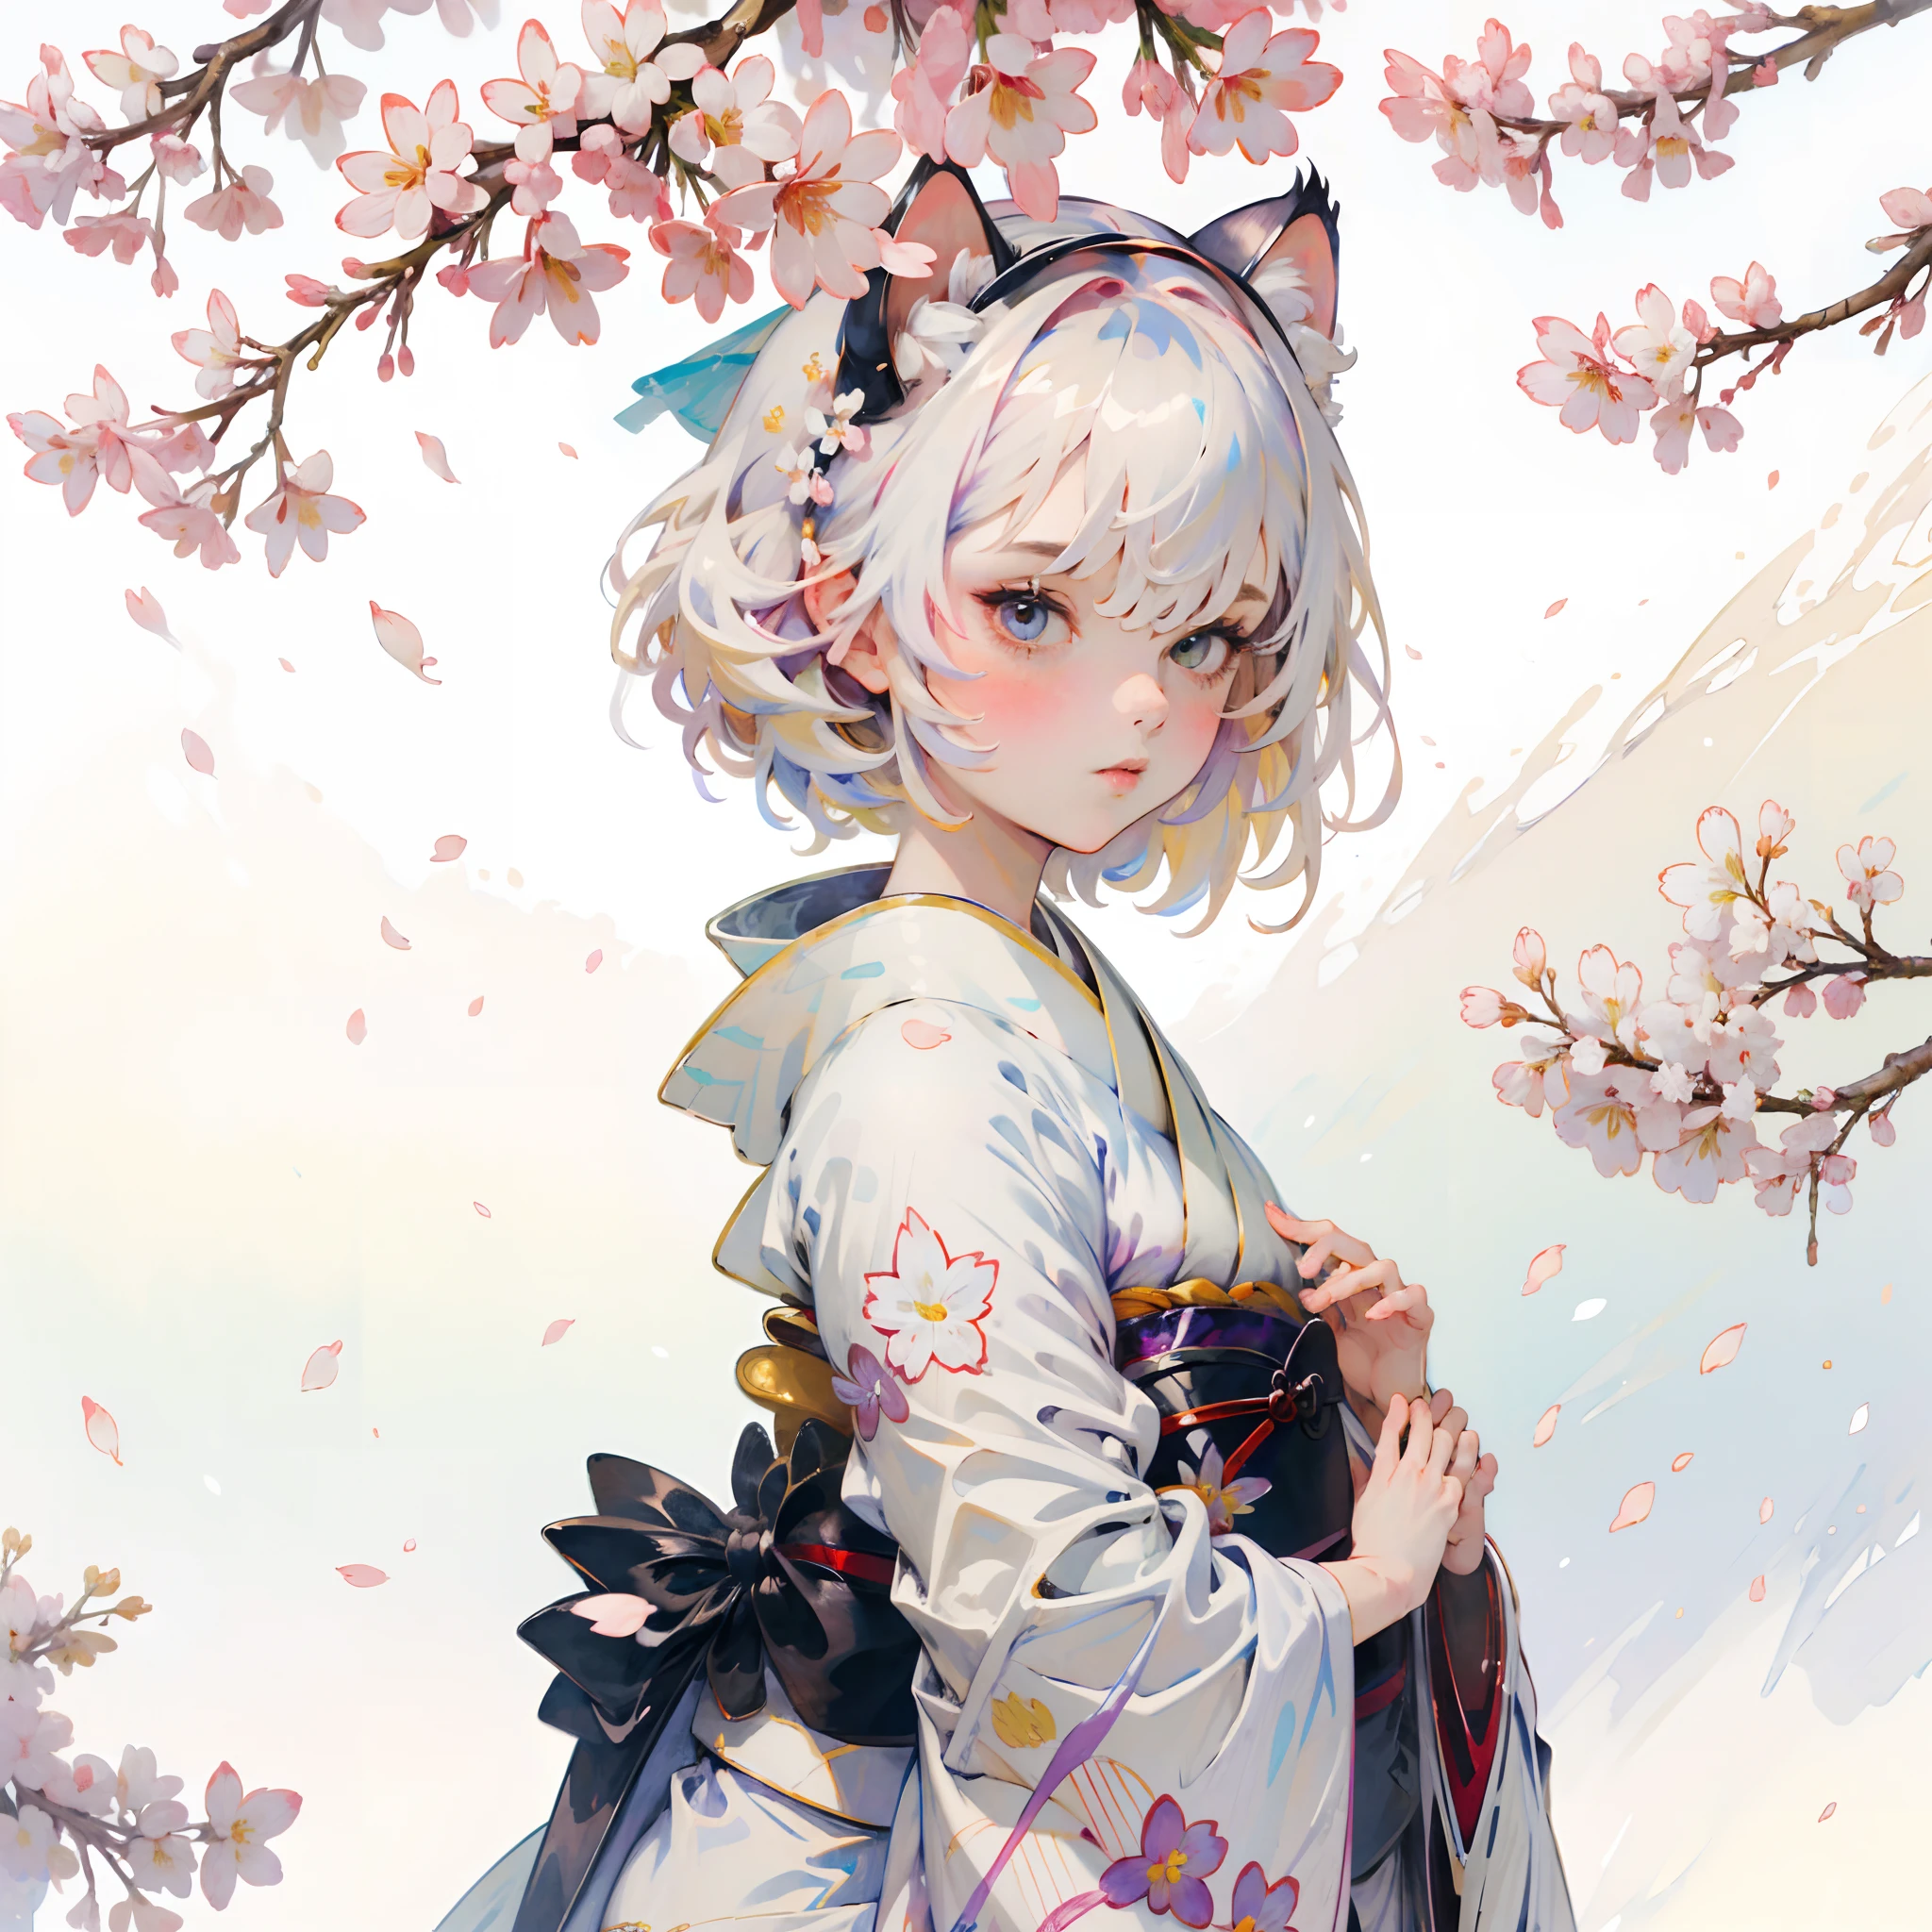 (8k Hintergrund:1.2),(ultrahohe Auflösung:1.2),(Meisterwerk:1.1),Hintergrund,gute Qualität,Meisterwerk,(Hohe Detailliertheit),1 Mädchen, trägt einen weißen Kimono mit Sakura-Blütenblättern , umgeben von Blütenblättern, weißes Haar,Katzenohren, Schön,